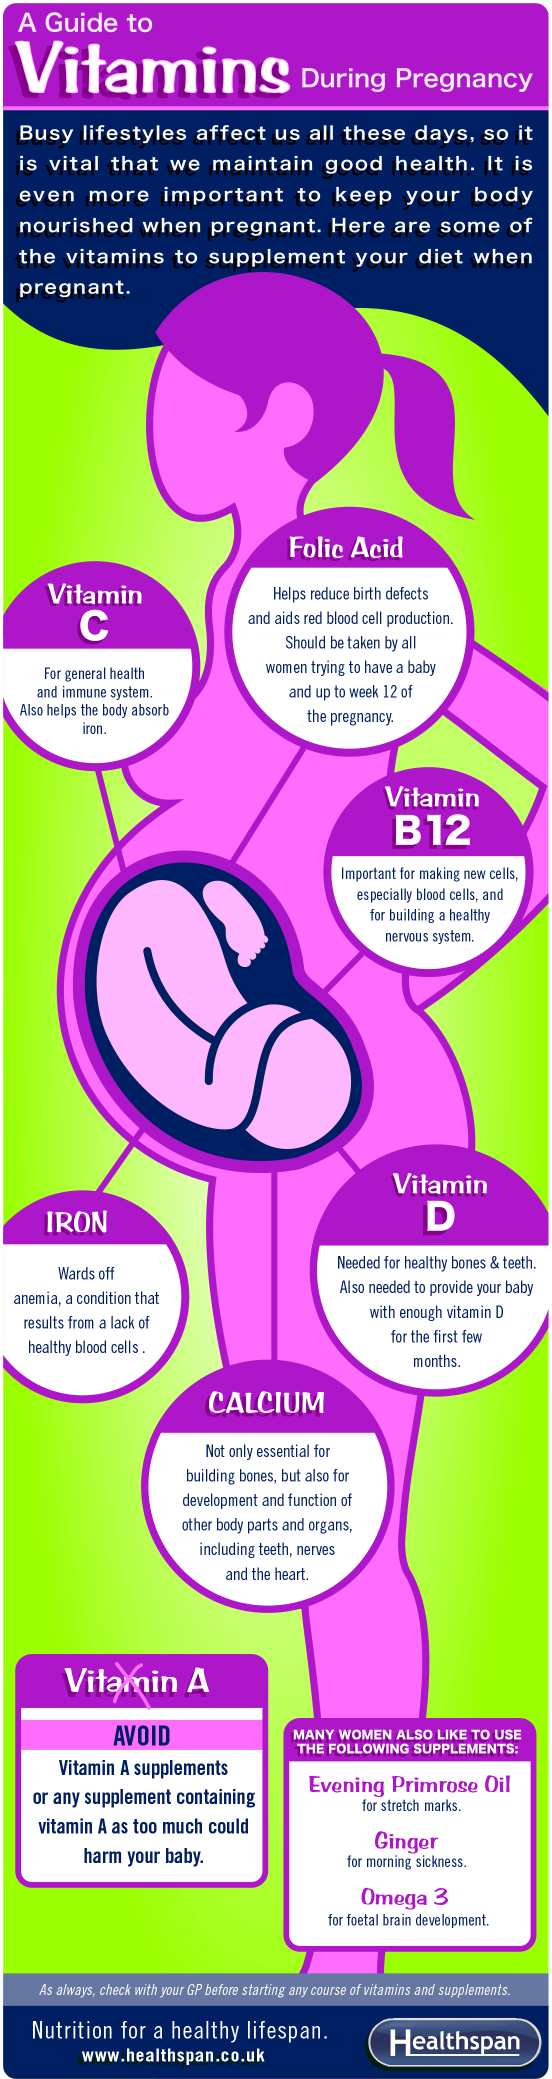 panduan vitamin semasa hamil